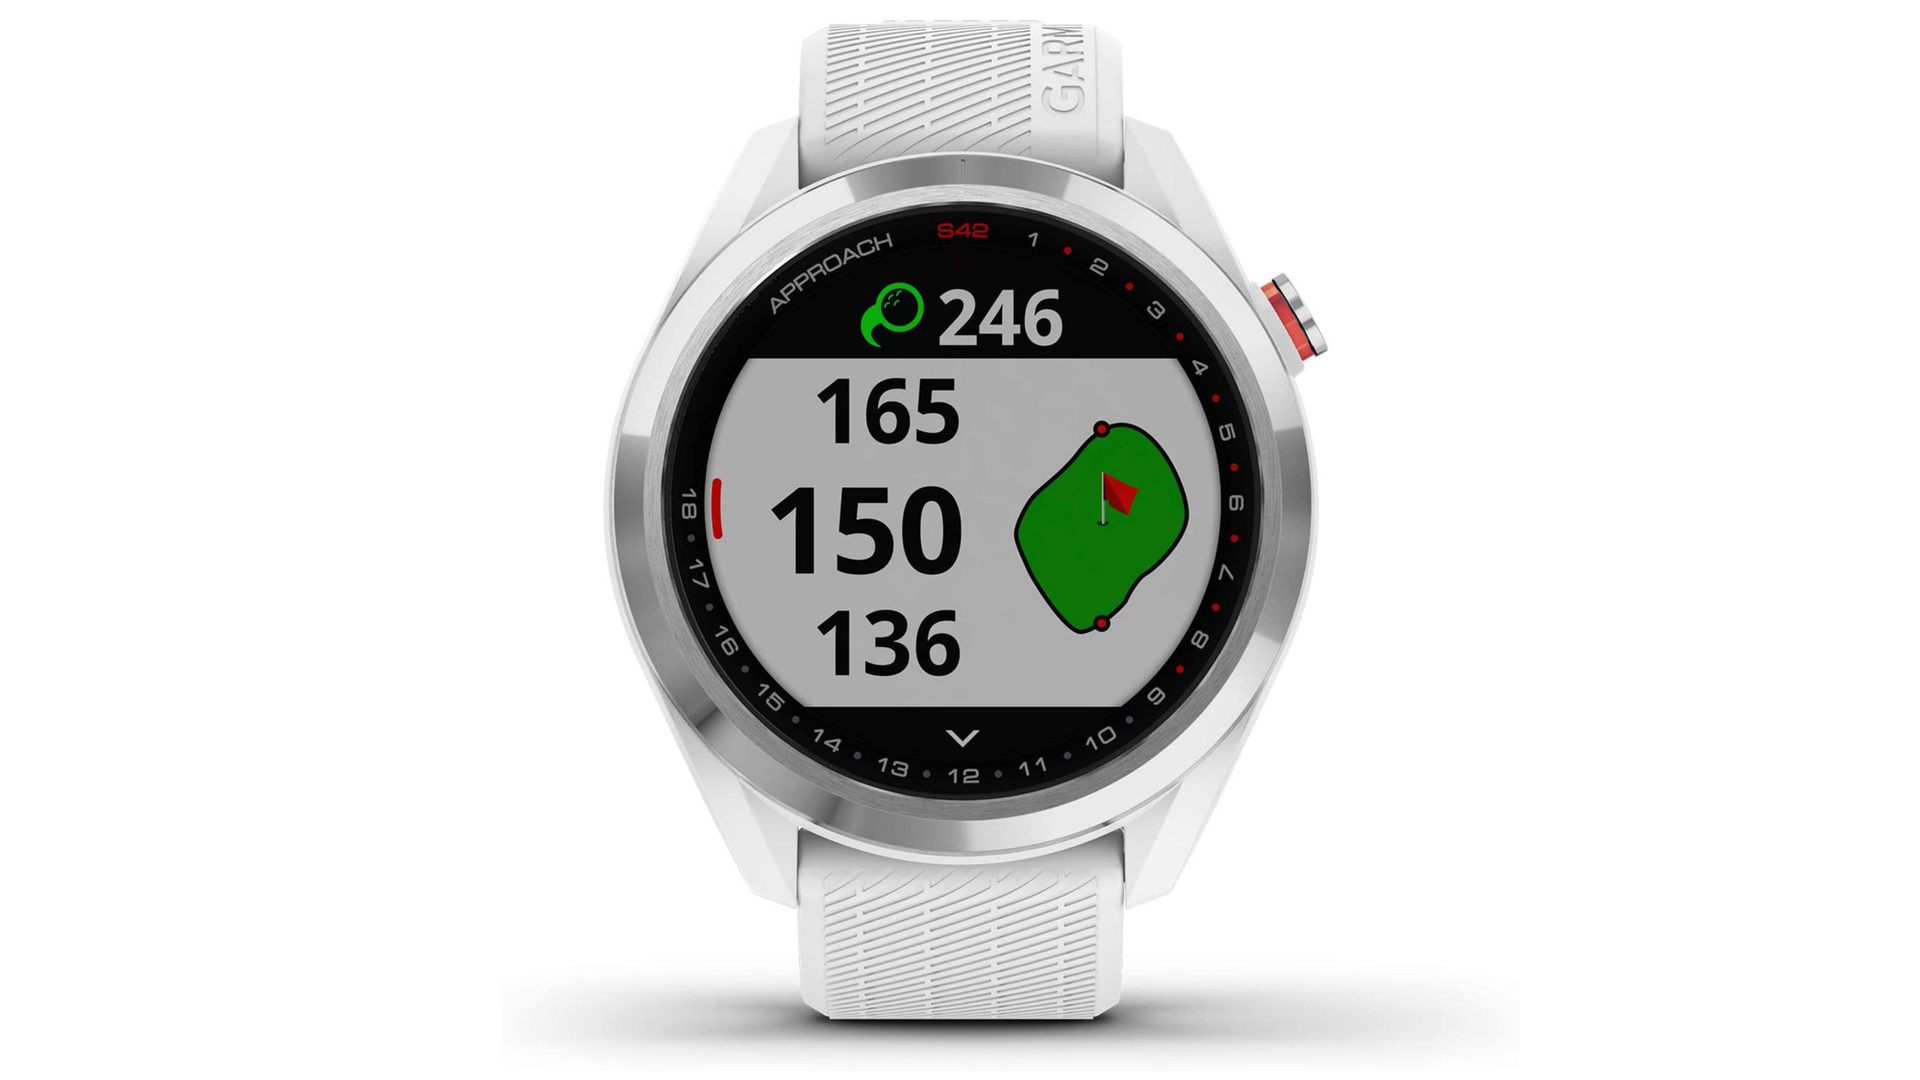 Garmin方法的产品图像S42代表了普通玩家的最佳高尔夫球手表。